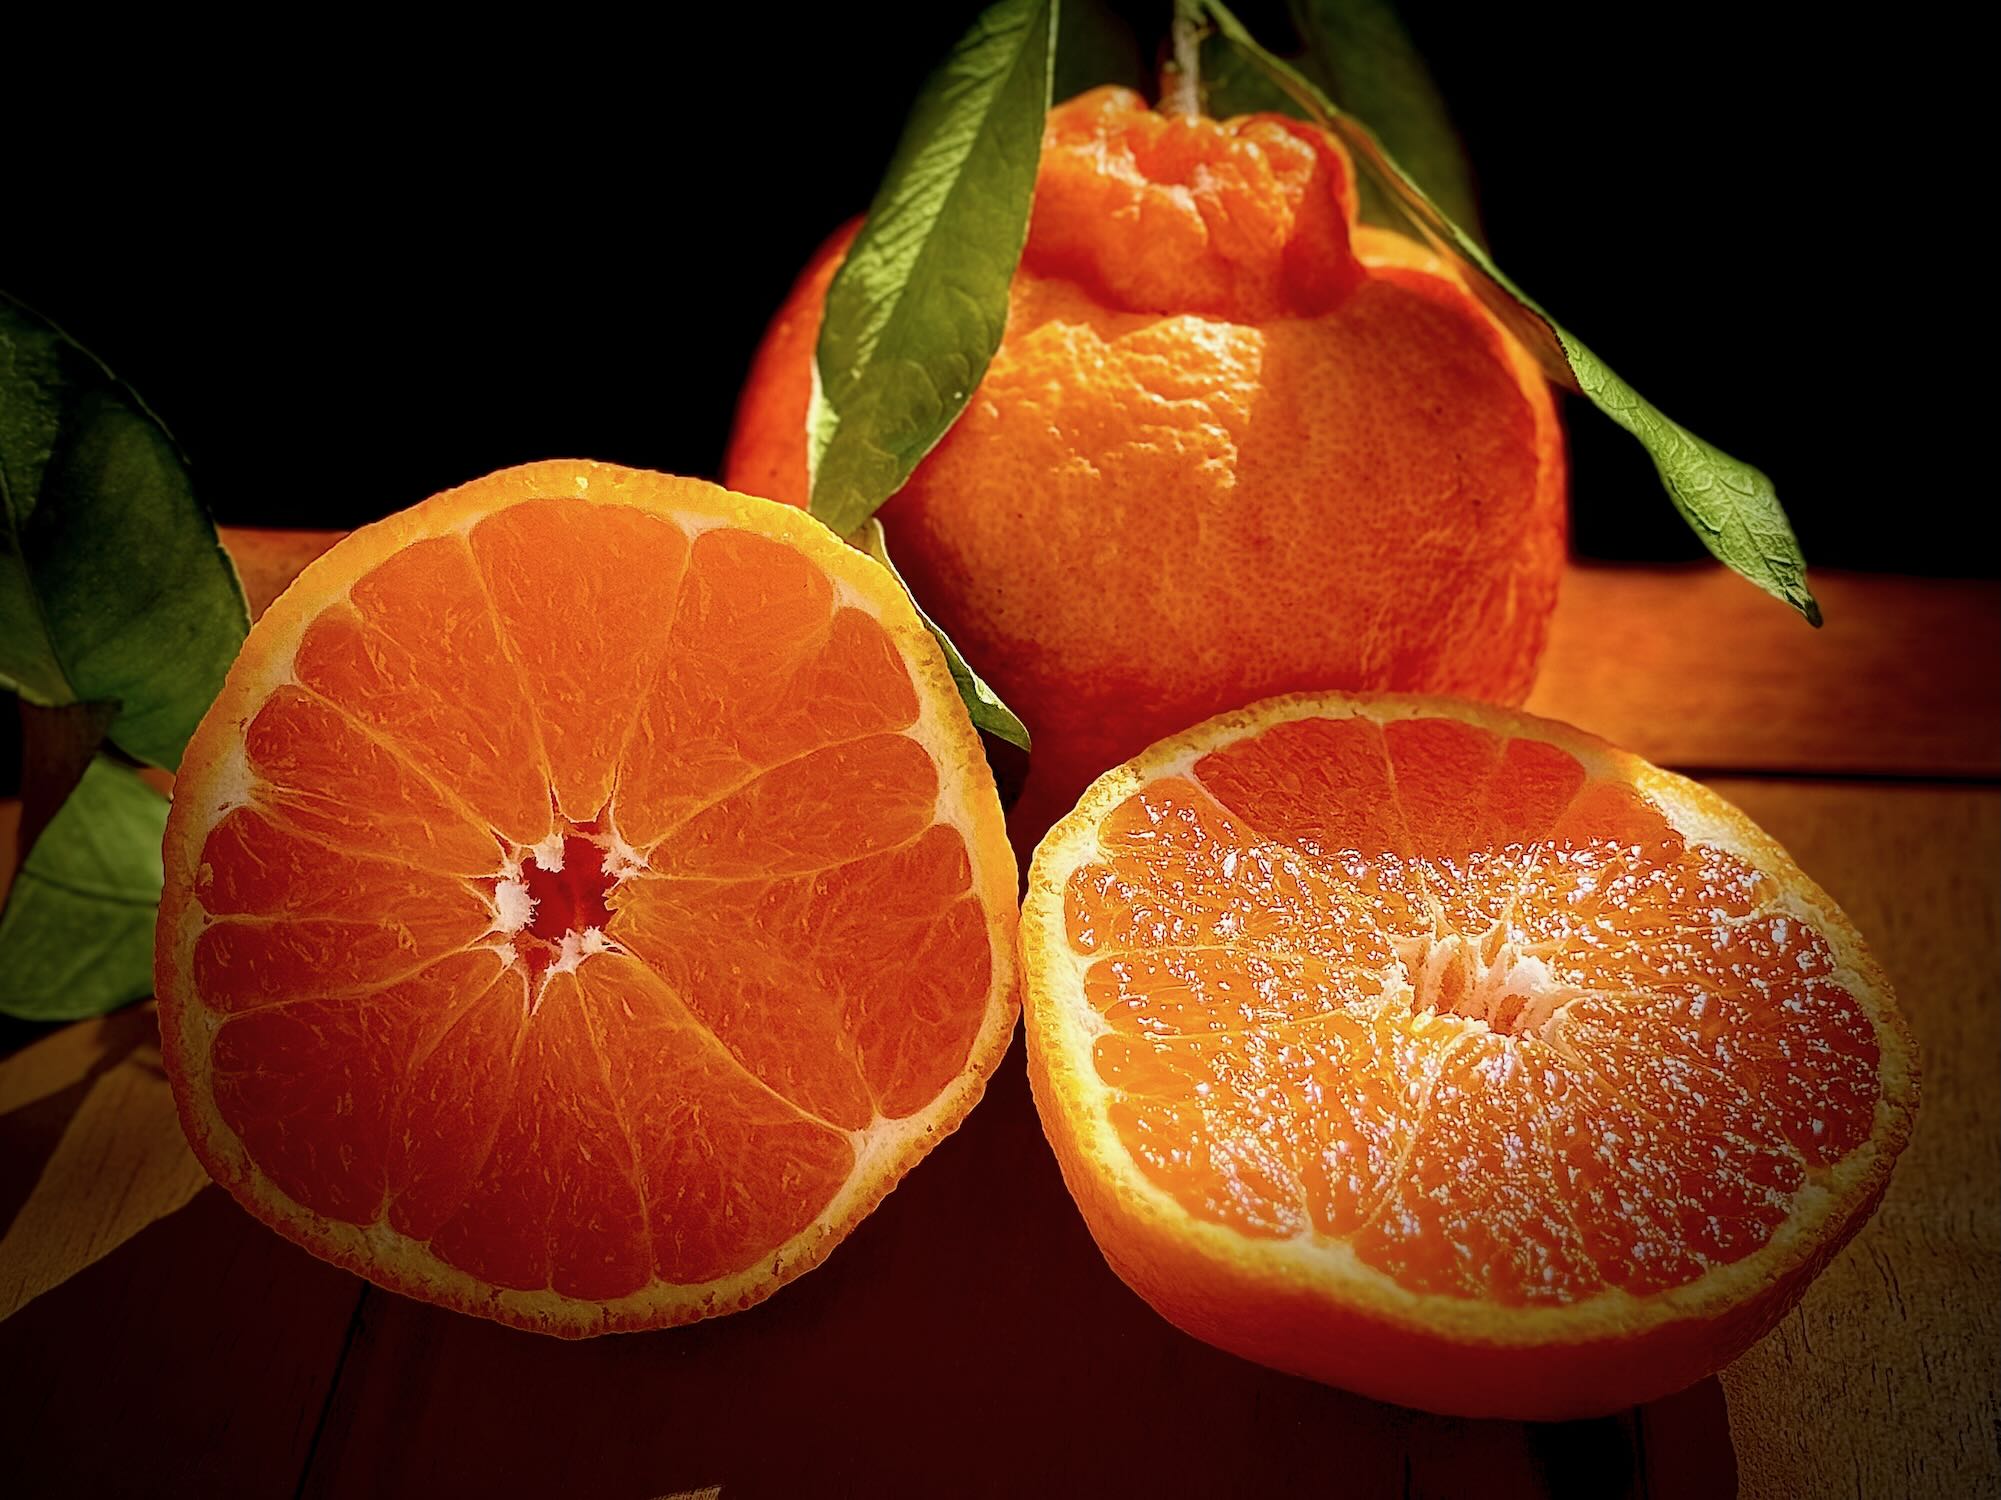 【糖度17度以上】奇跡の『不知火』樹上完熟で生まれた高い糖度と優しい酸味の至高の柑橘